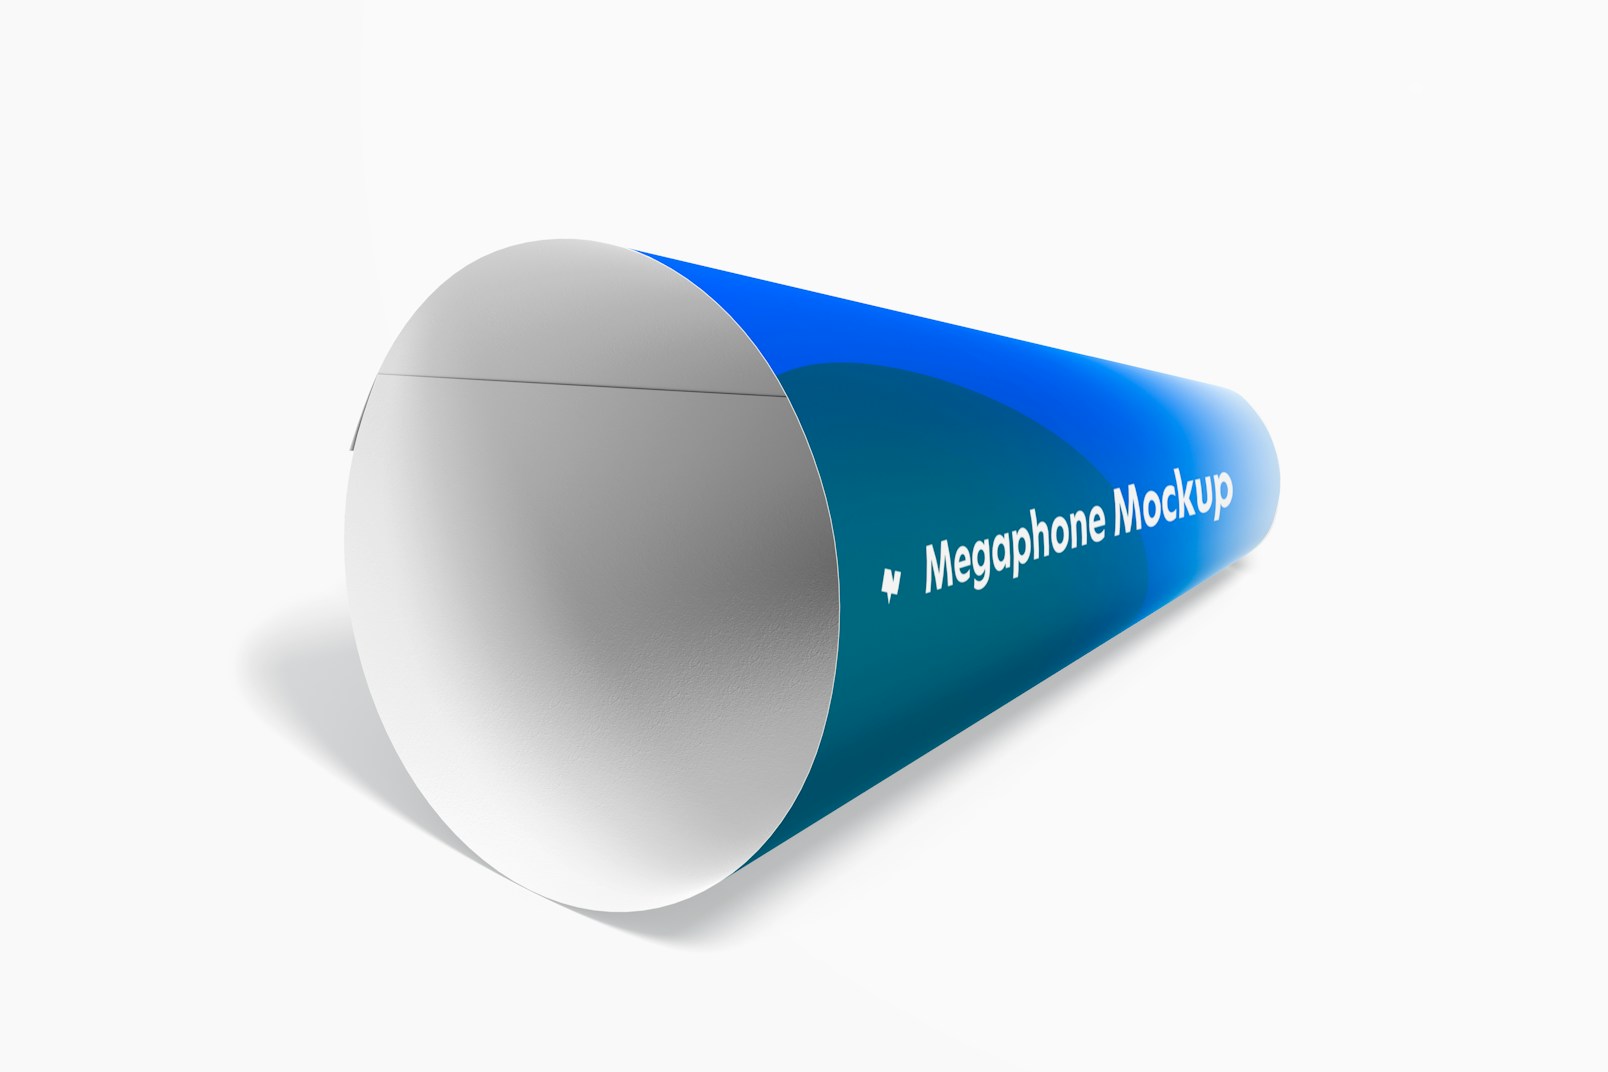 Paper Megaphone Mockup, Isometric Left View